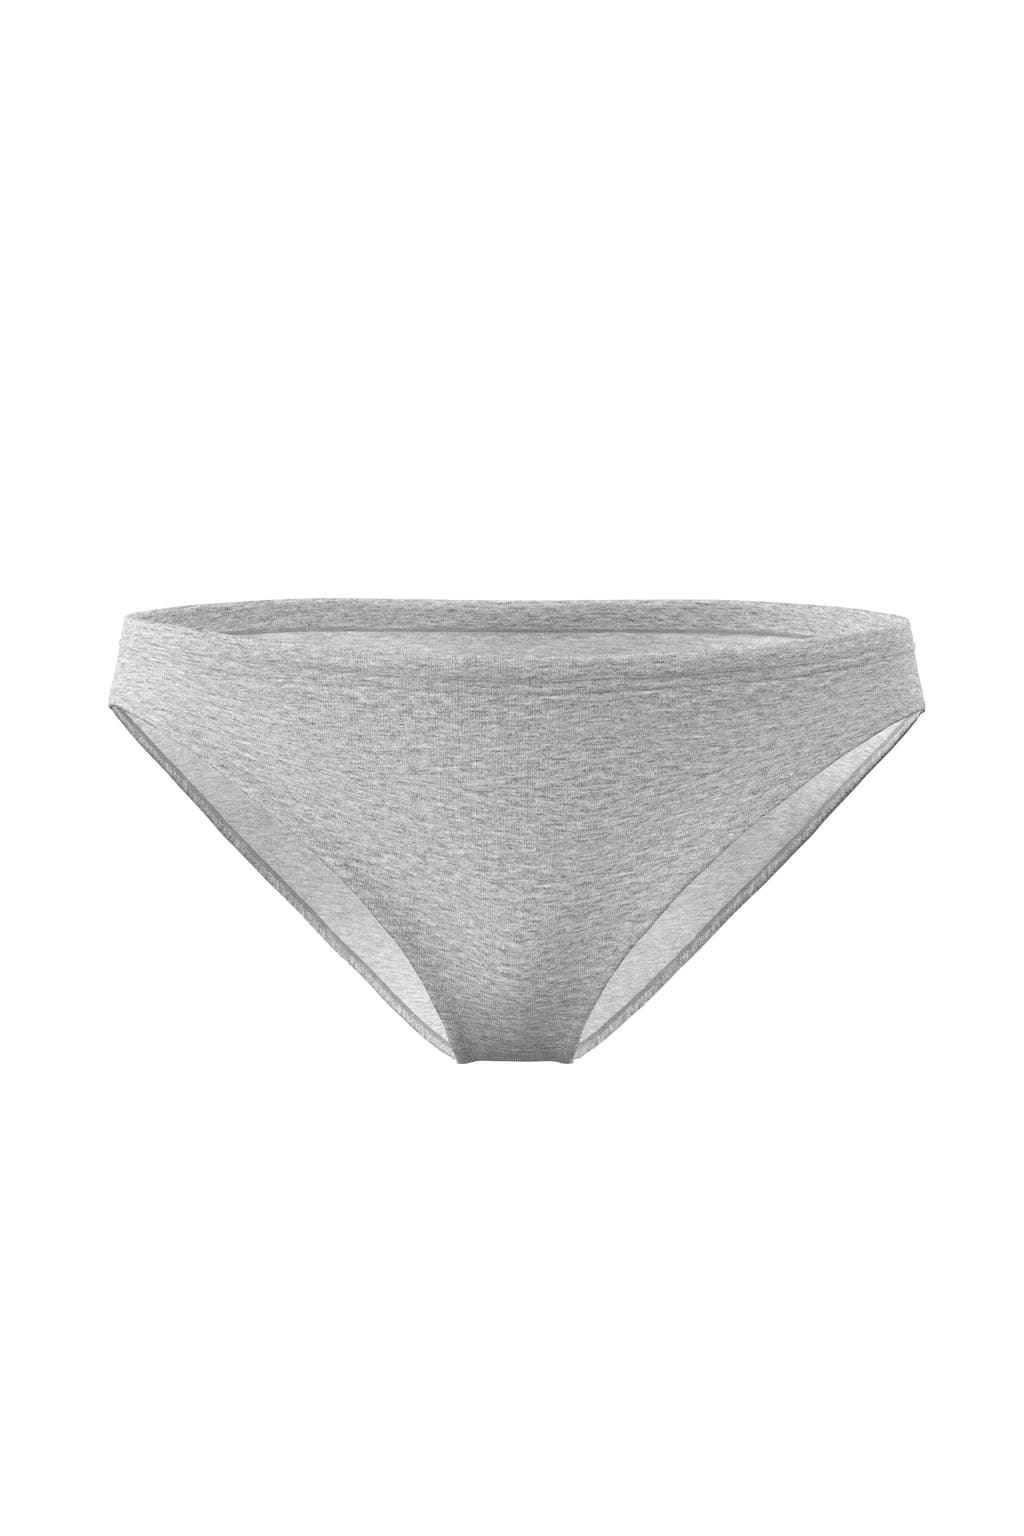 heather grey bikini underwear